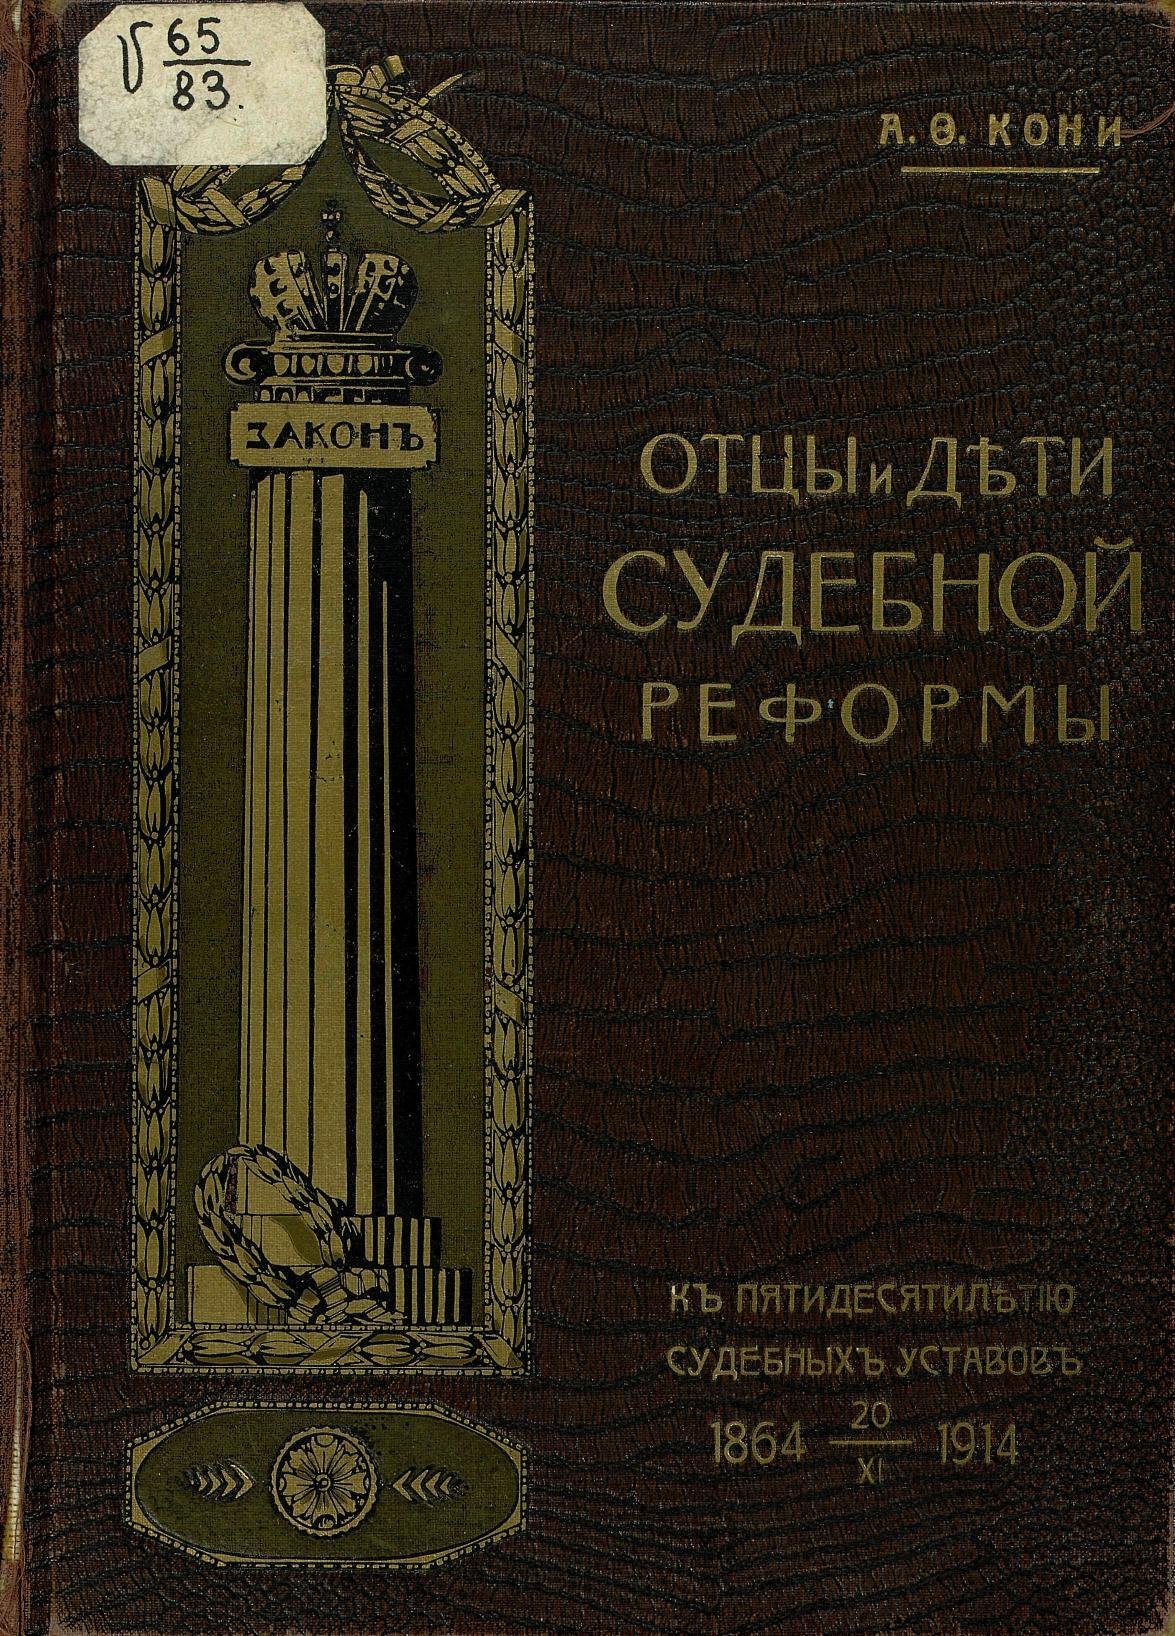 Обложка книги «Отцы и дети судебной реформы», издание 1914 года, фото: AndreyIGOSHEV / Wikimedia